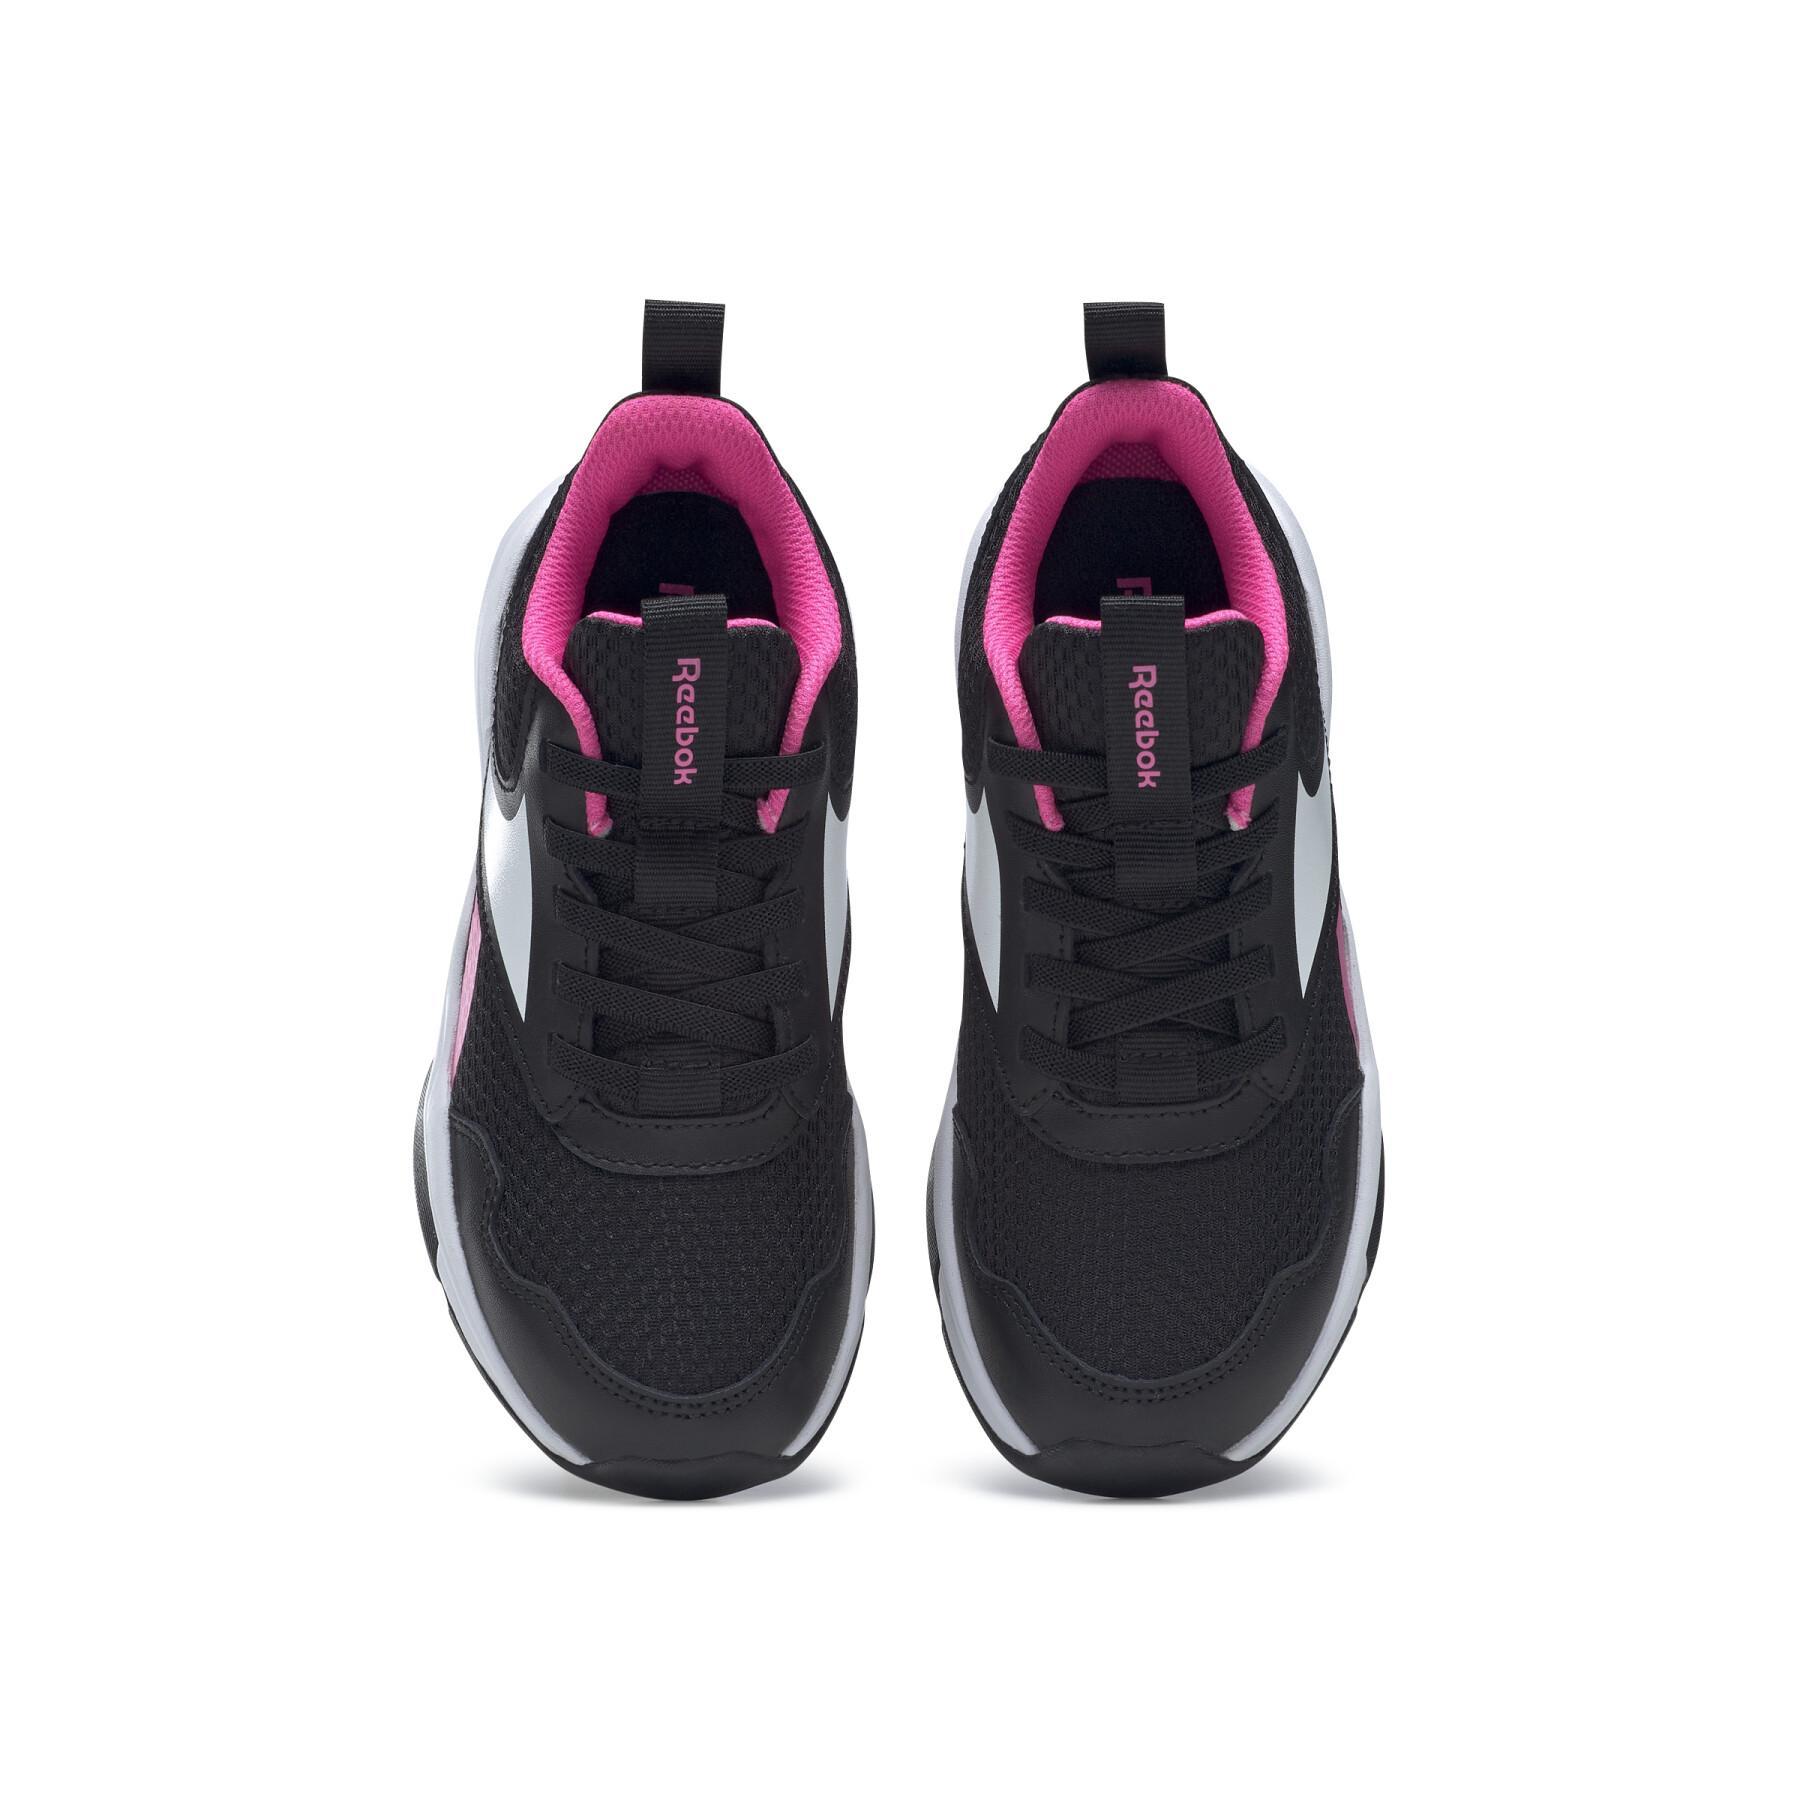 Zapatillas de deporte para niñas Reebok Xt Sprinter 2 Alt